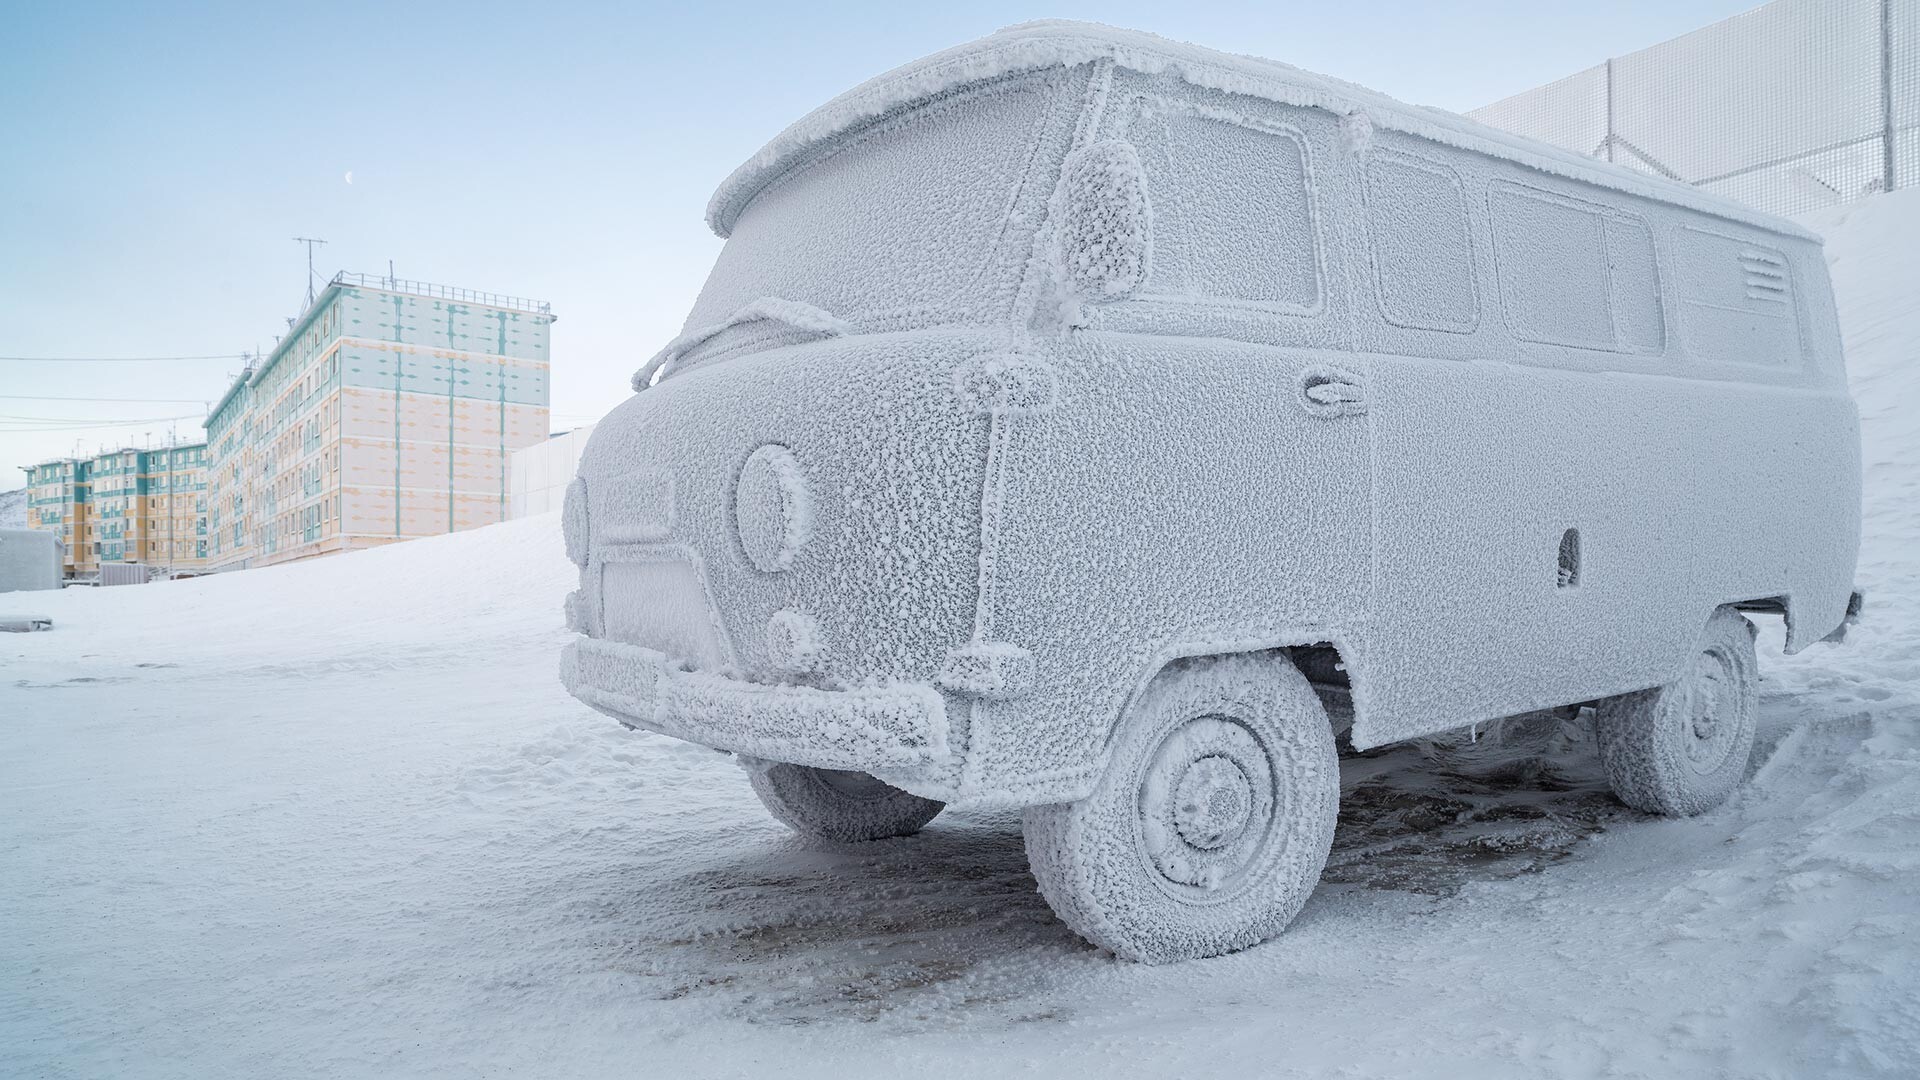 Avtomobil v "ledenem oklepu". Surovo podnebje na Arktiki. Zimski mraz. 26. november 2013, mesto Anadir (Čukotka, Sibirija, Rusija)